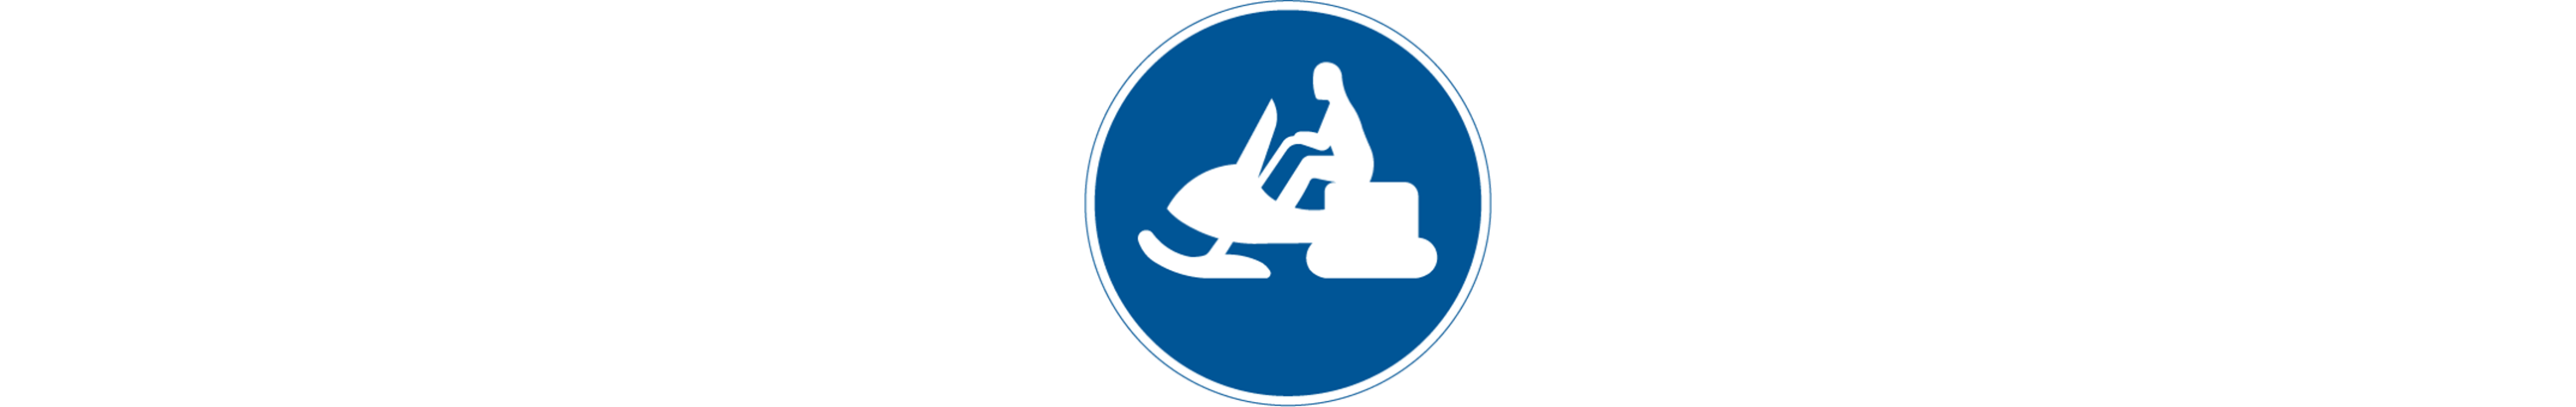 vägmärke för led för terrängmotorfordon och terrängsläp